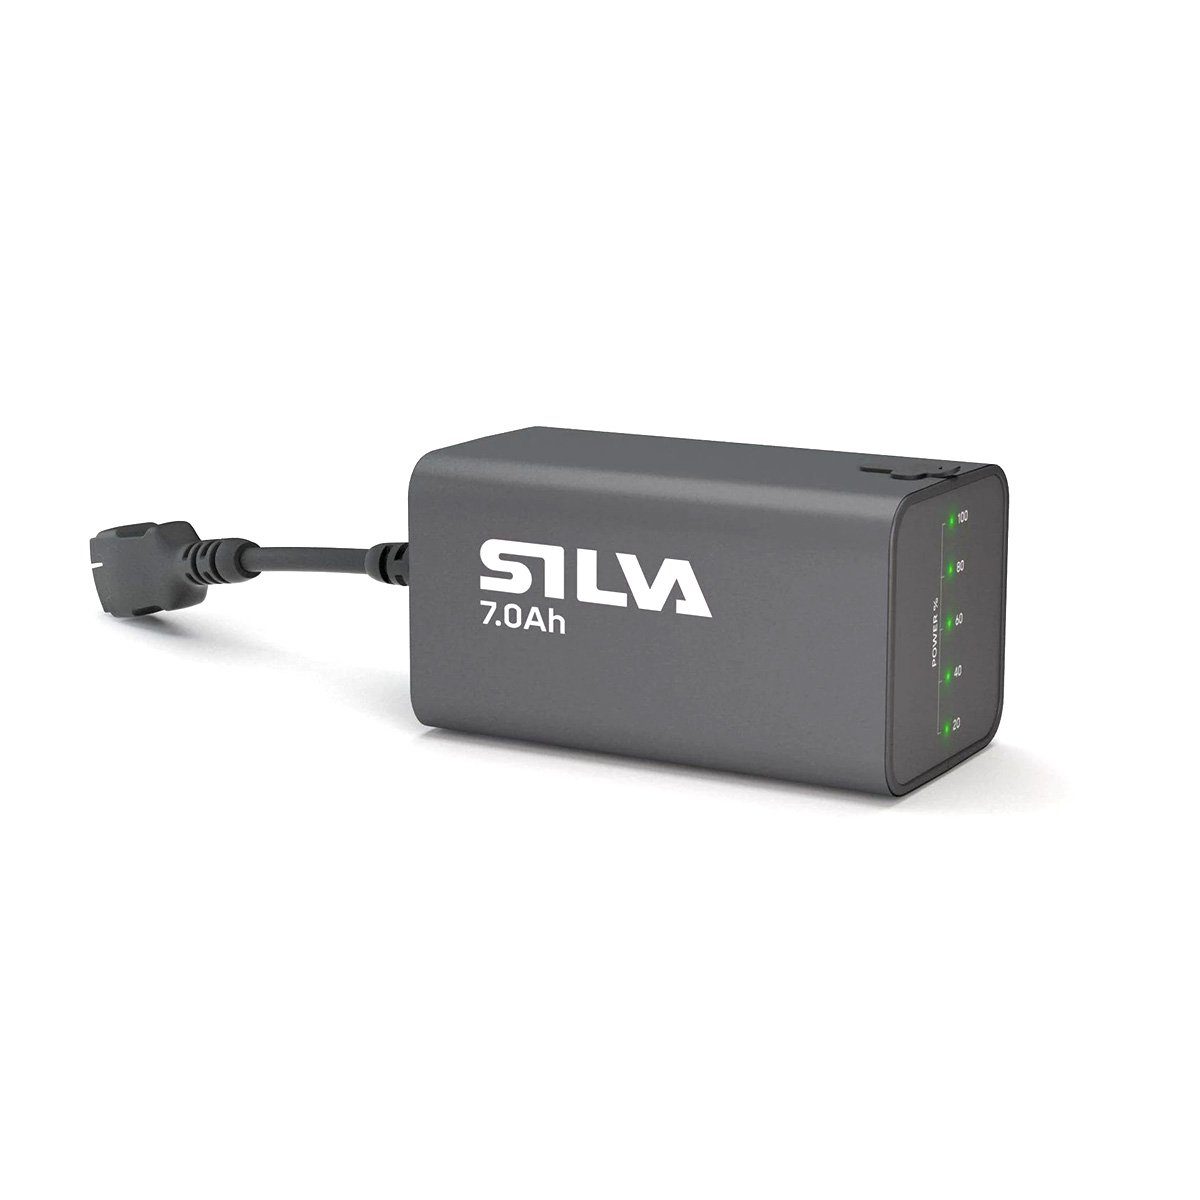 Silva Headlamp Battery Li-Akku 7.0Ah Akku